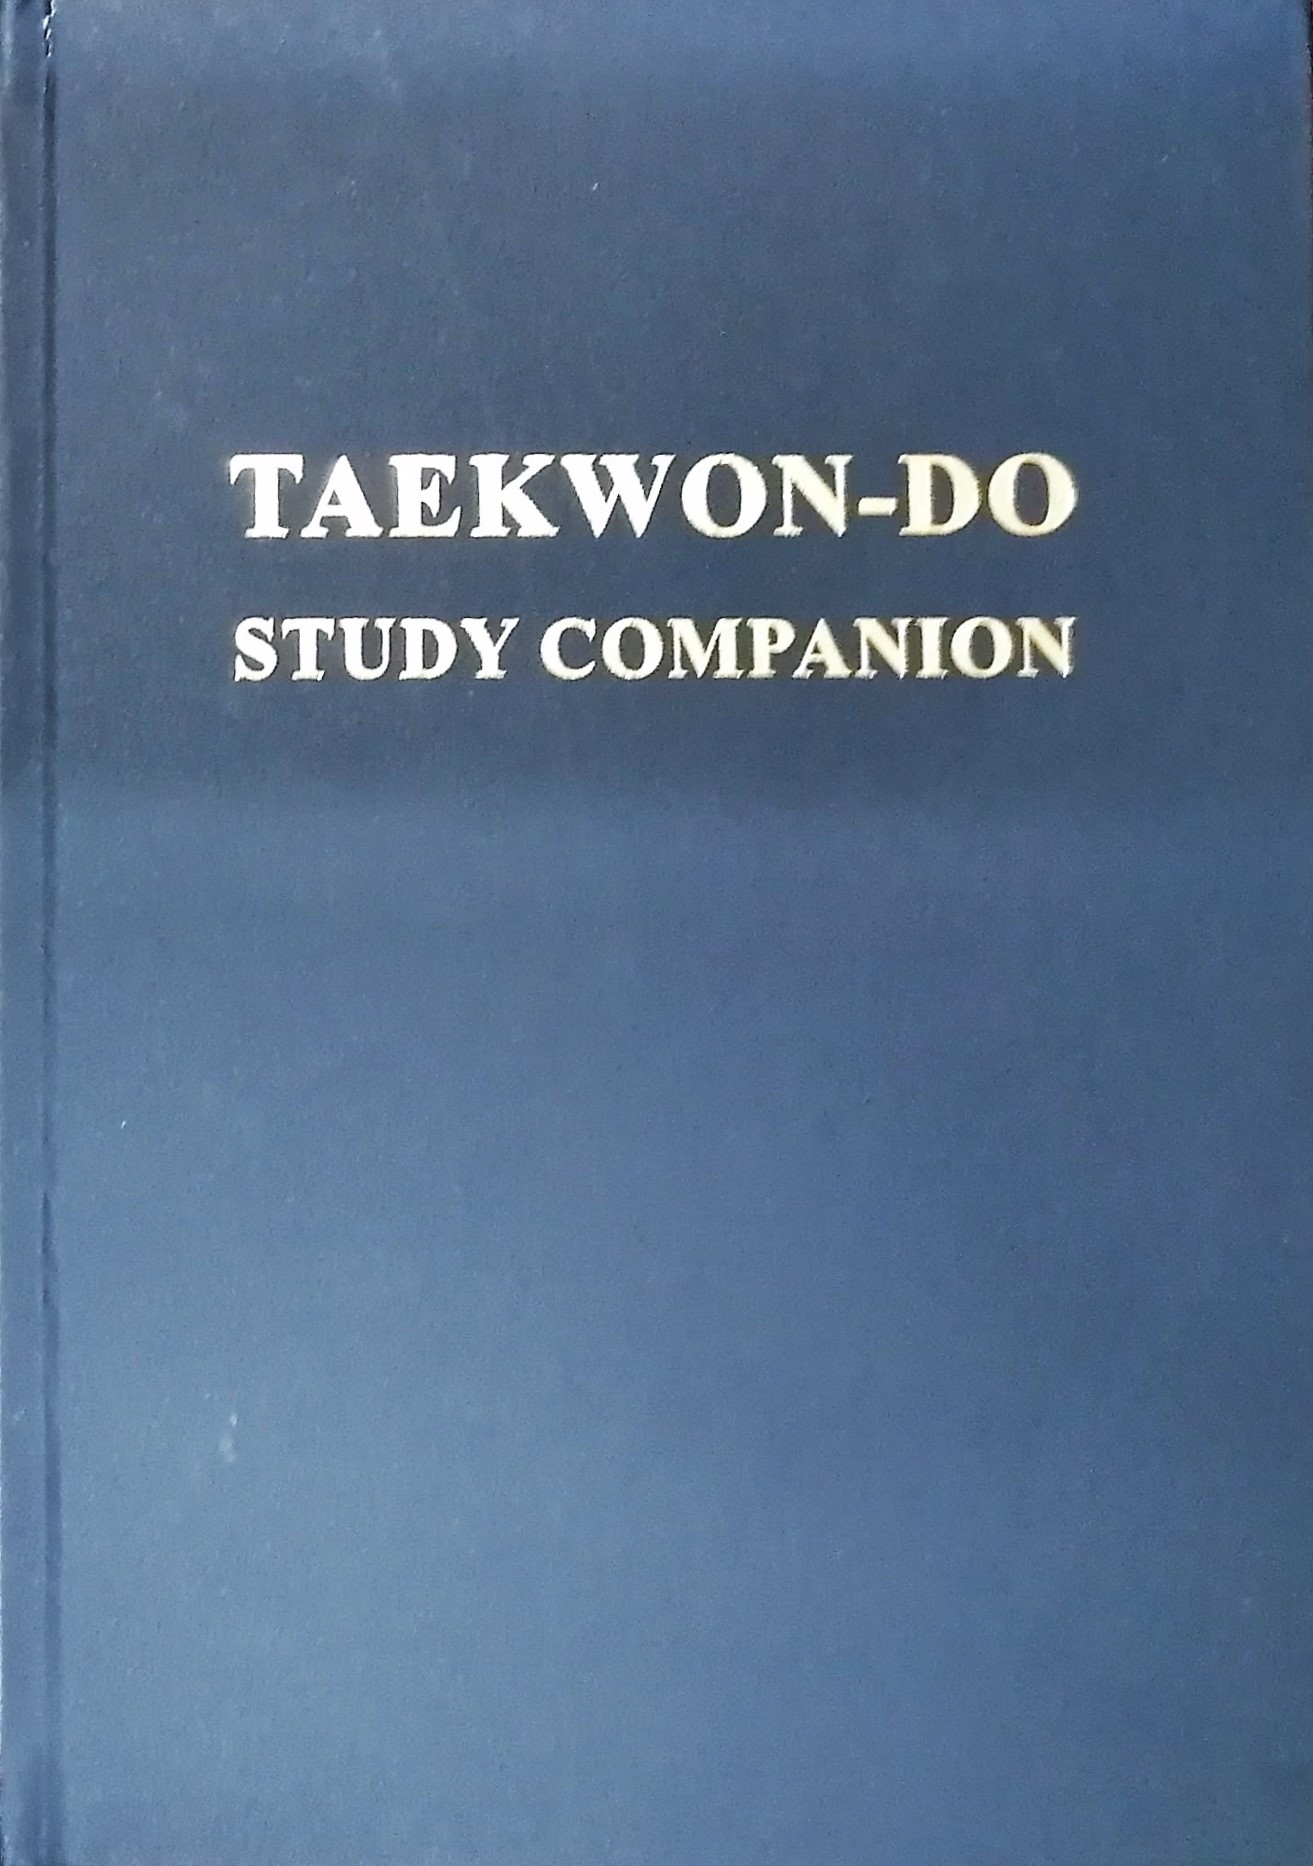 Taekwon-do study companion